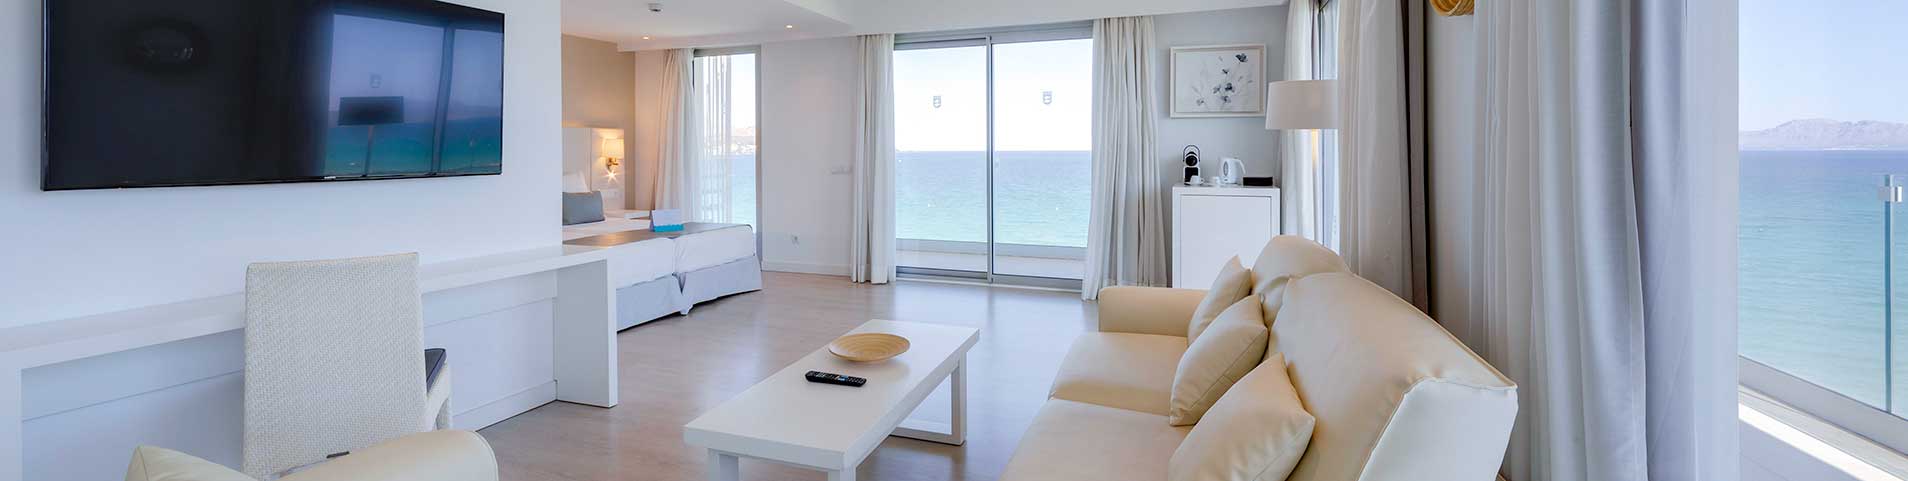 royal suite vista mar playa esperanza resort